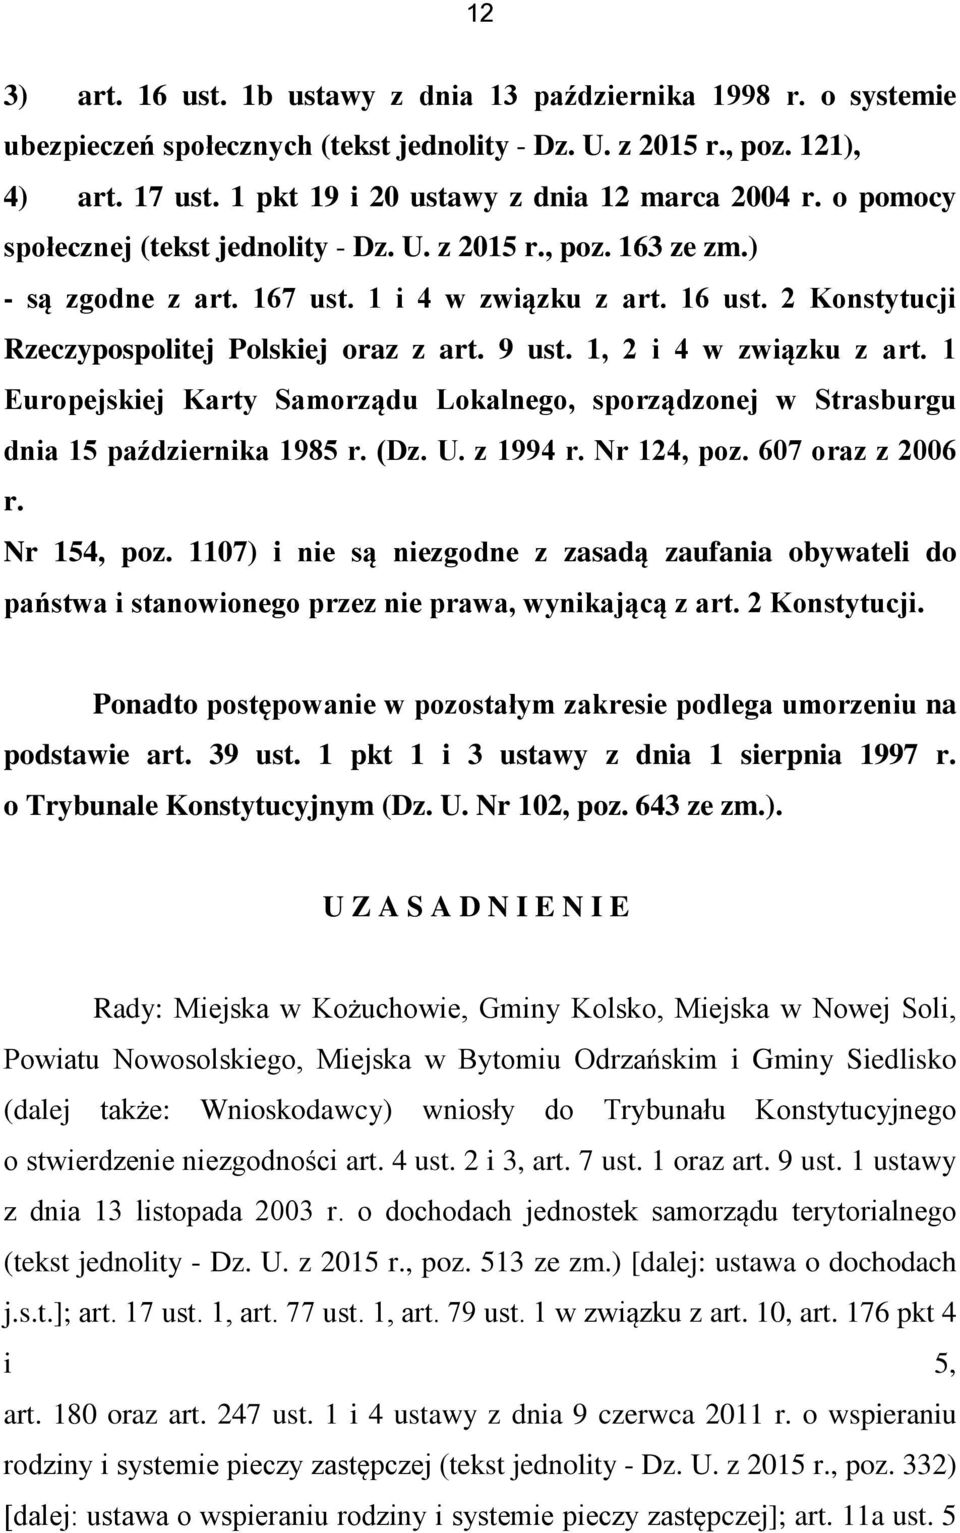 2 Konstytucji Rzeczypospolitej Polskiej oraz z art. 9 ust. 1, 2 i 4 w związku z art. 1 Europejskiej Karty Samorządu Lokalnego, sporządzonej w Strasburgu dnia 15 października 1985 r. (Dz. U. z 1994 r.